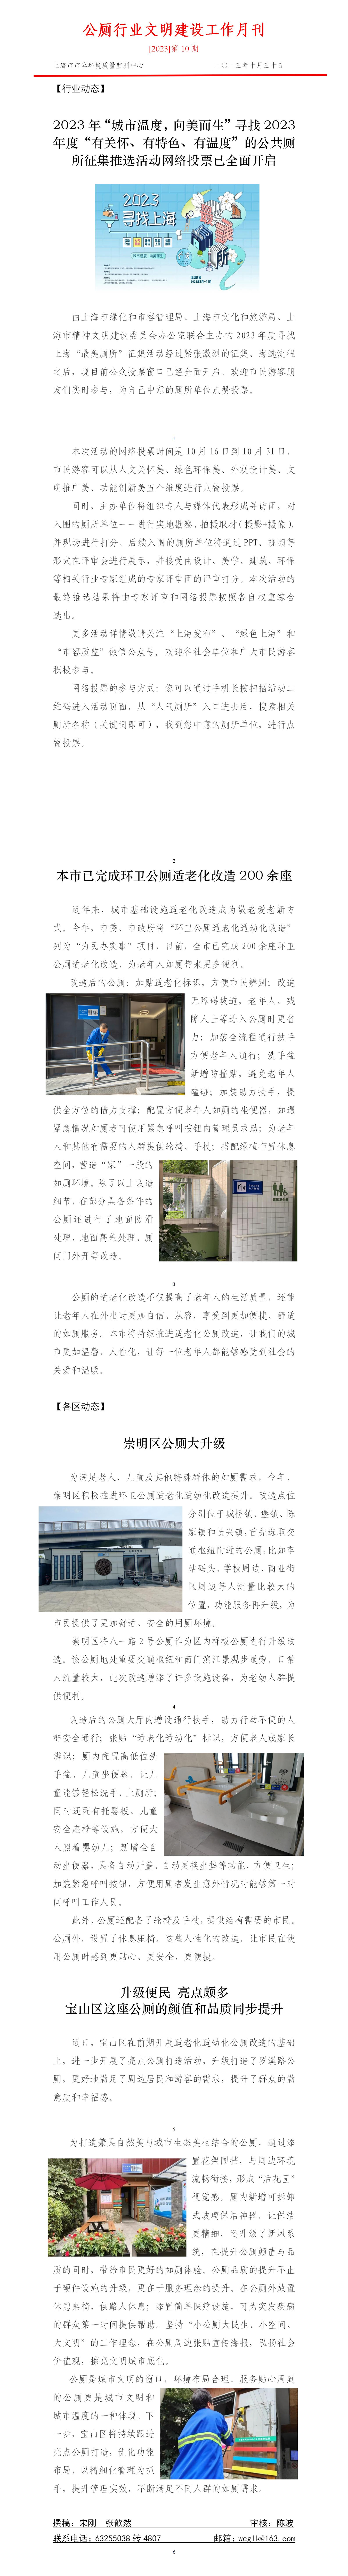 公厕行业文明创建工作月刊202310_01.jpg